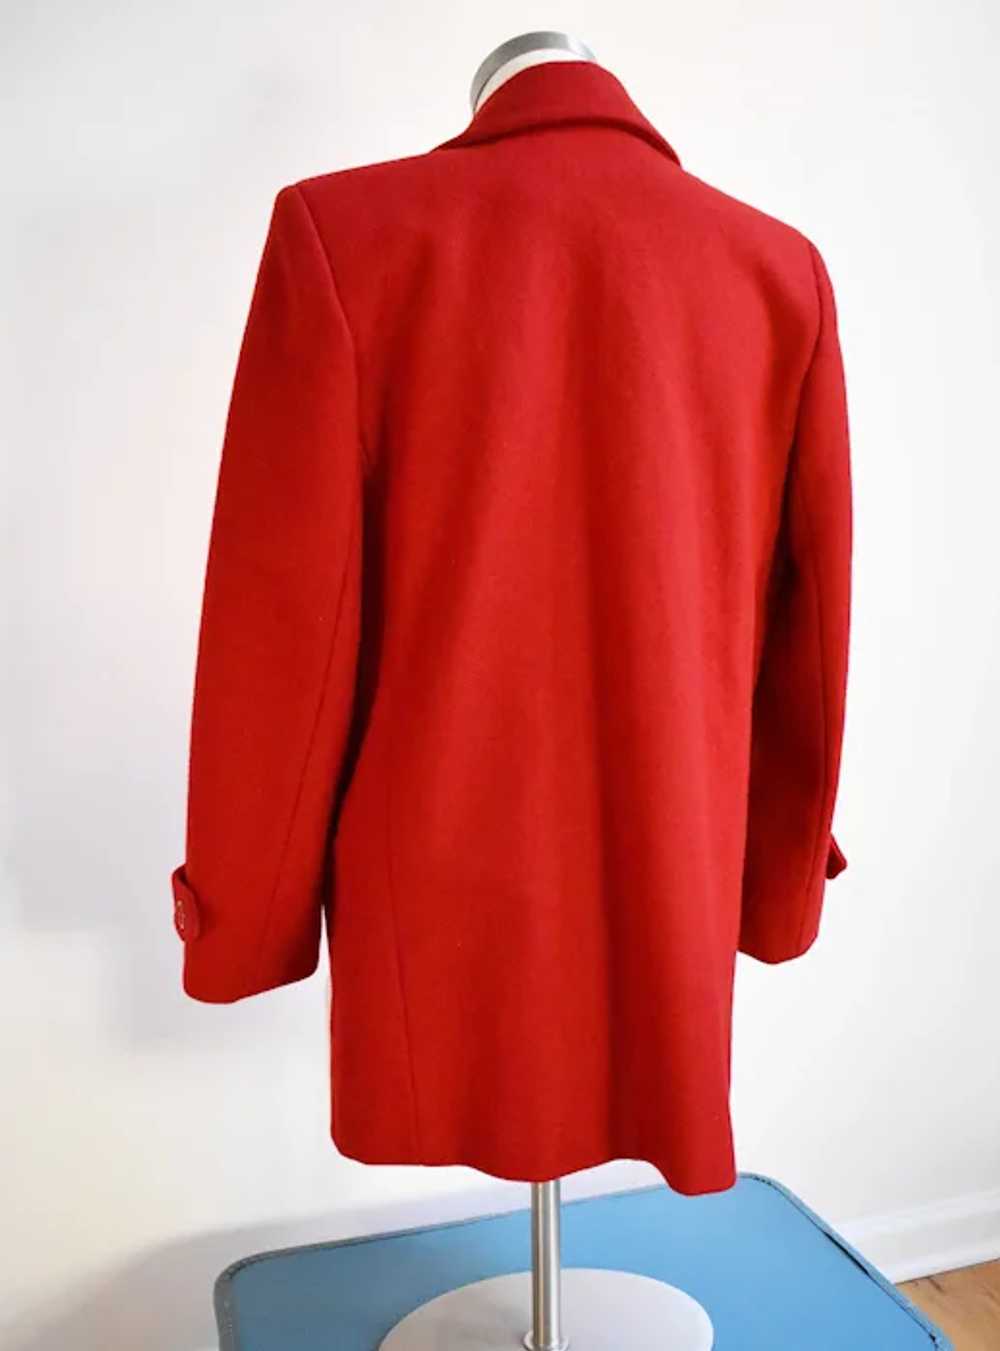 Red wool coat Ferncroft size 6, stylish elegant b… - image 7